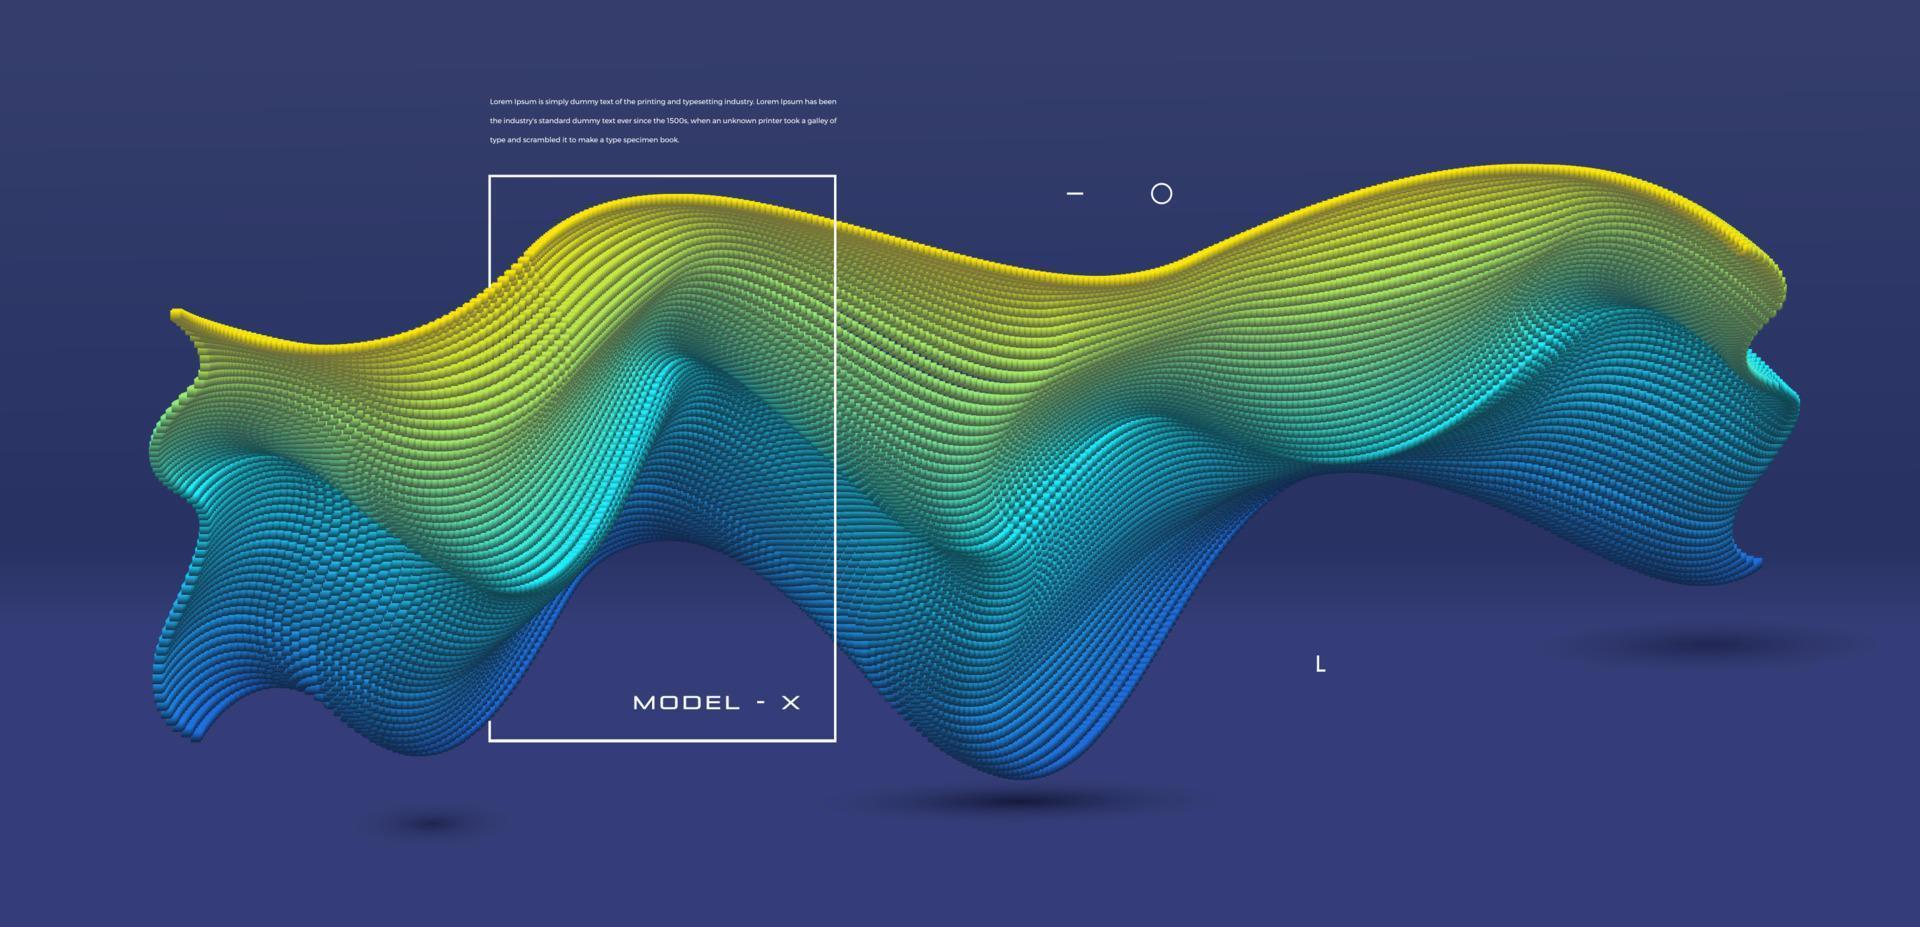 Fondo de onda de partículas colorido moderno con diseño de elementos conceptuales vector